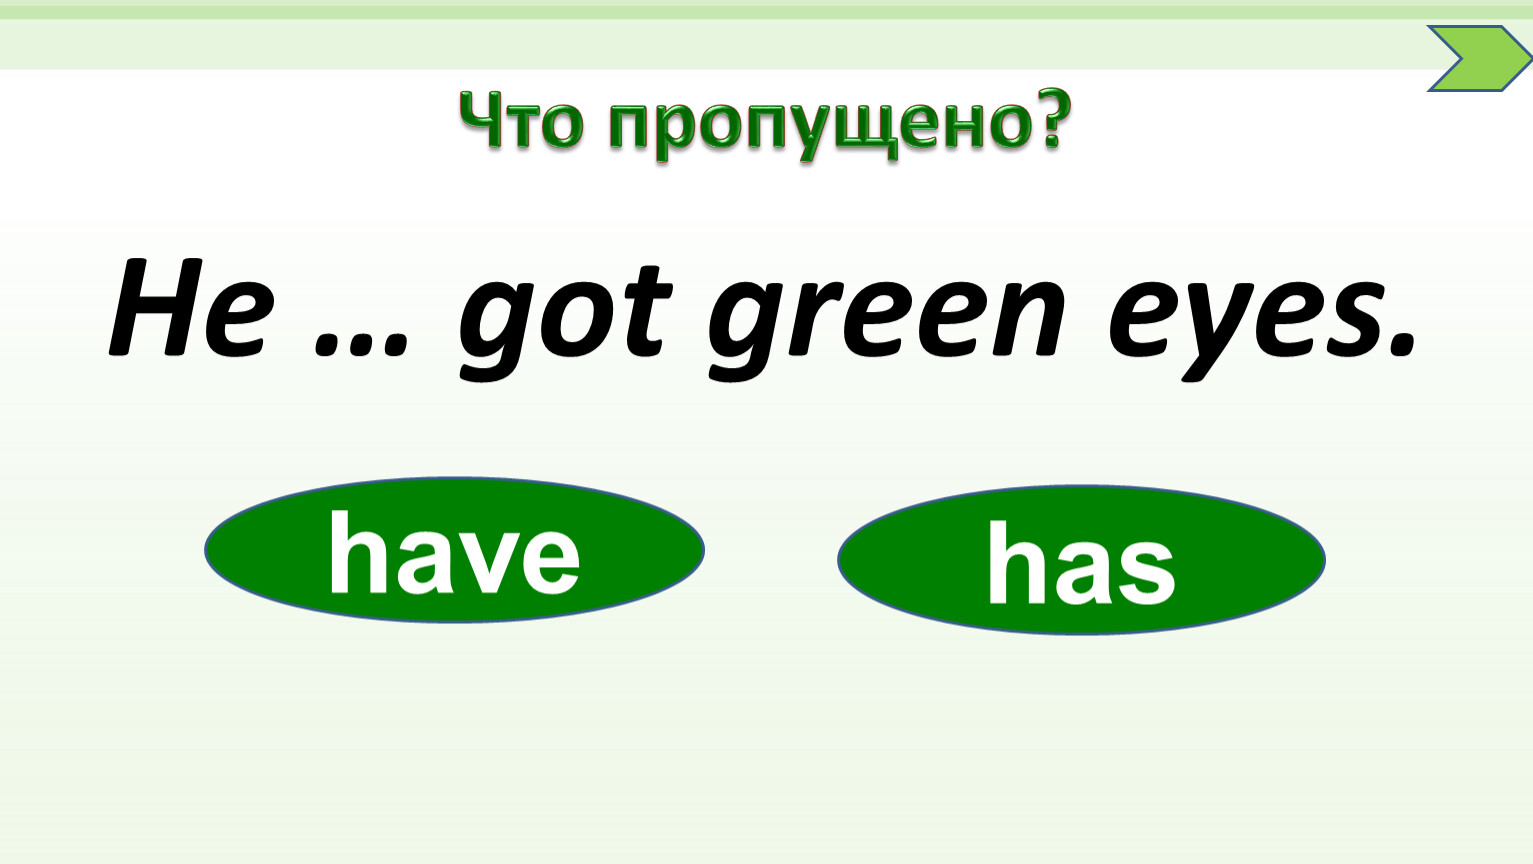 Has got Green Eyes. Get Green. Got Green Eyes. Маме has got Green Eyes.